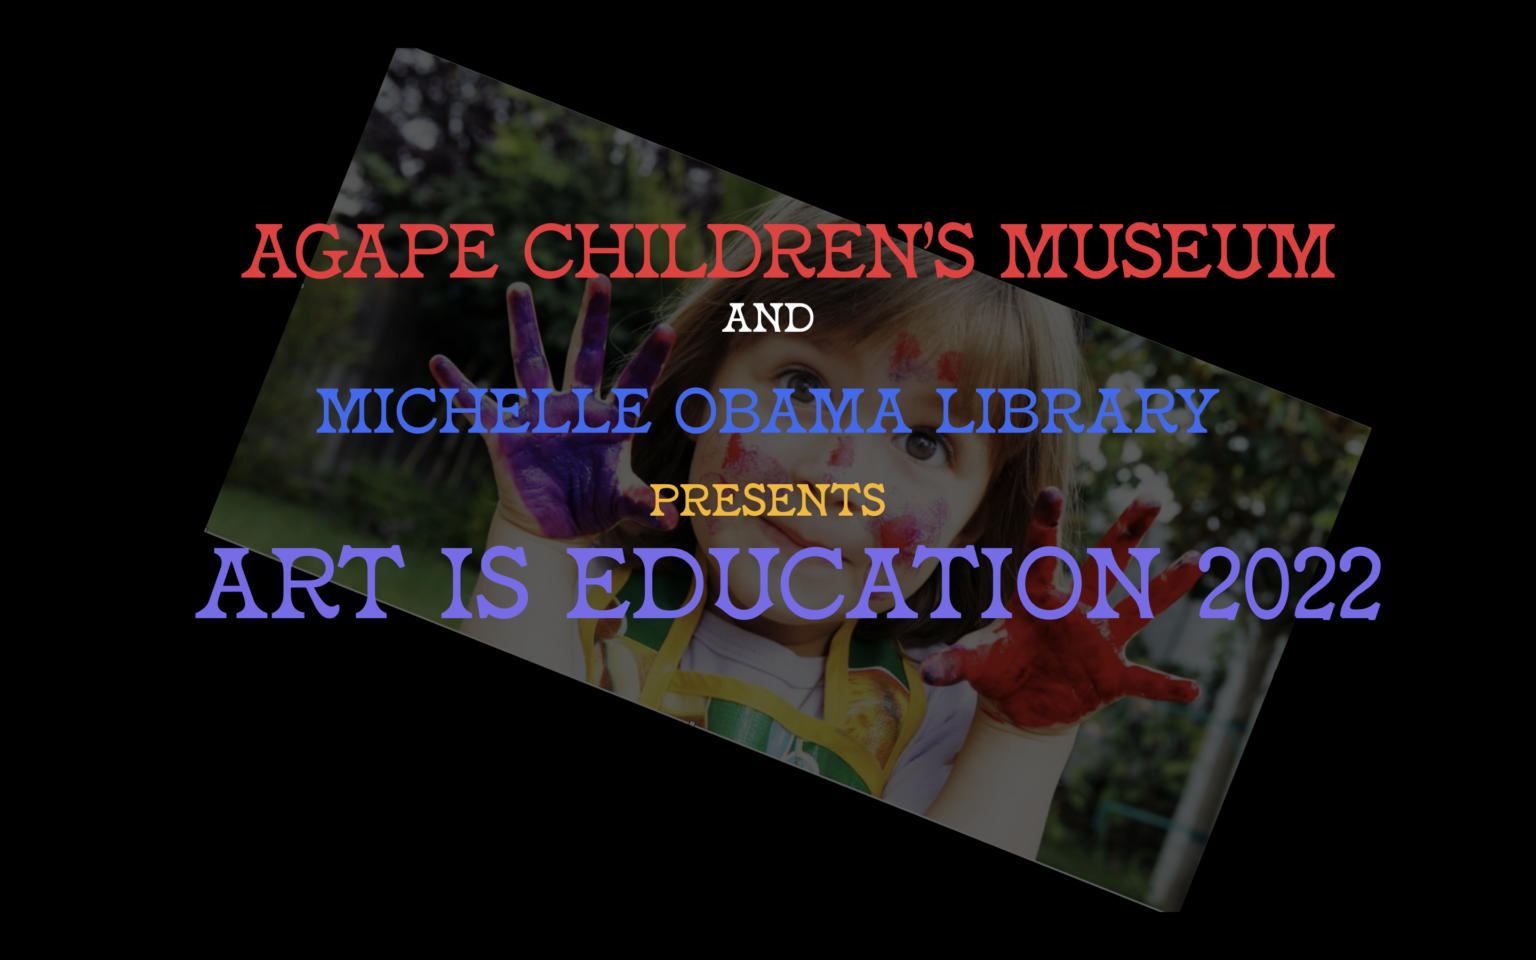 ART IS EDUCATION FESTIVAL 2022 Agape Children's Museum